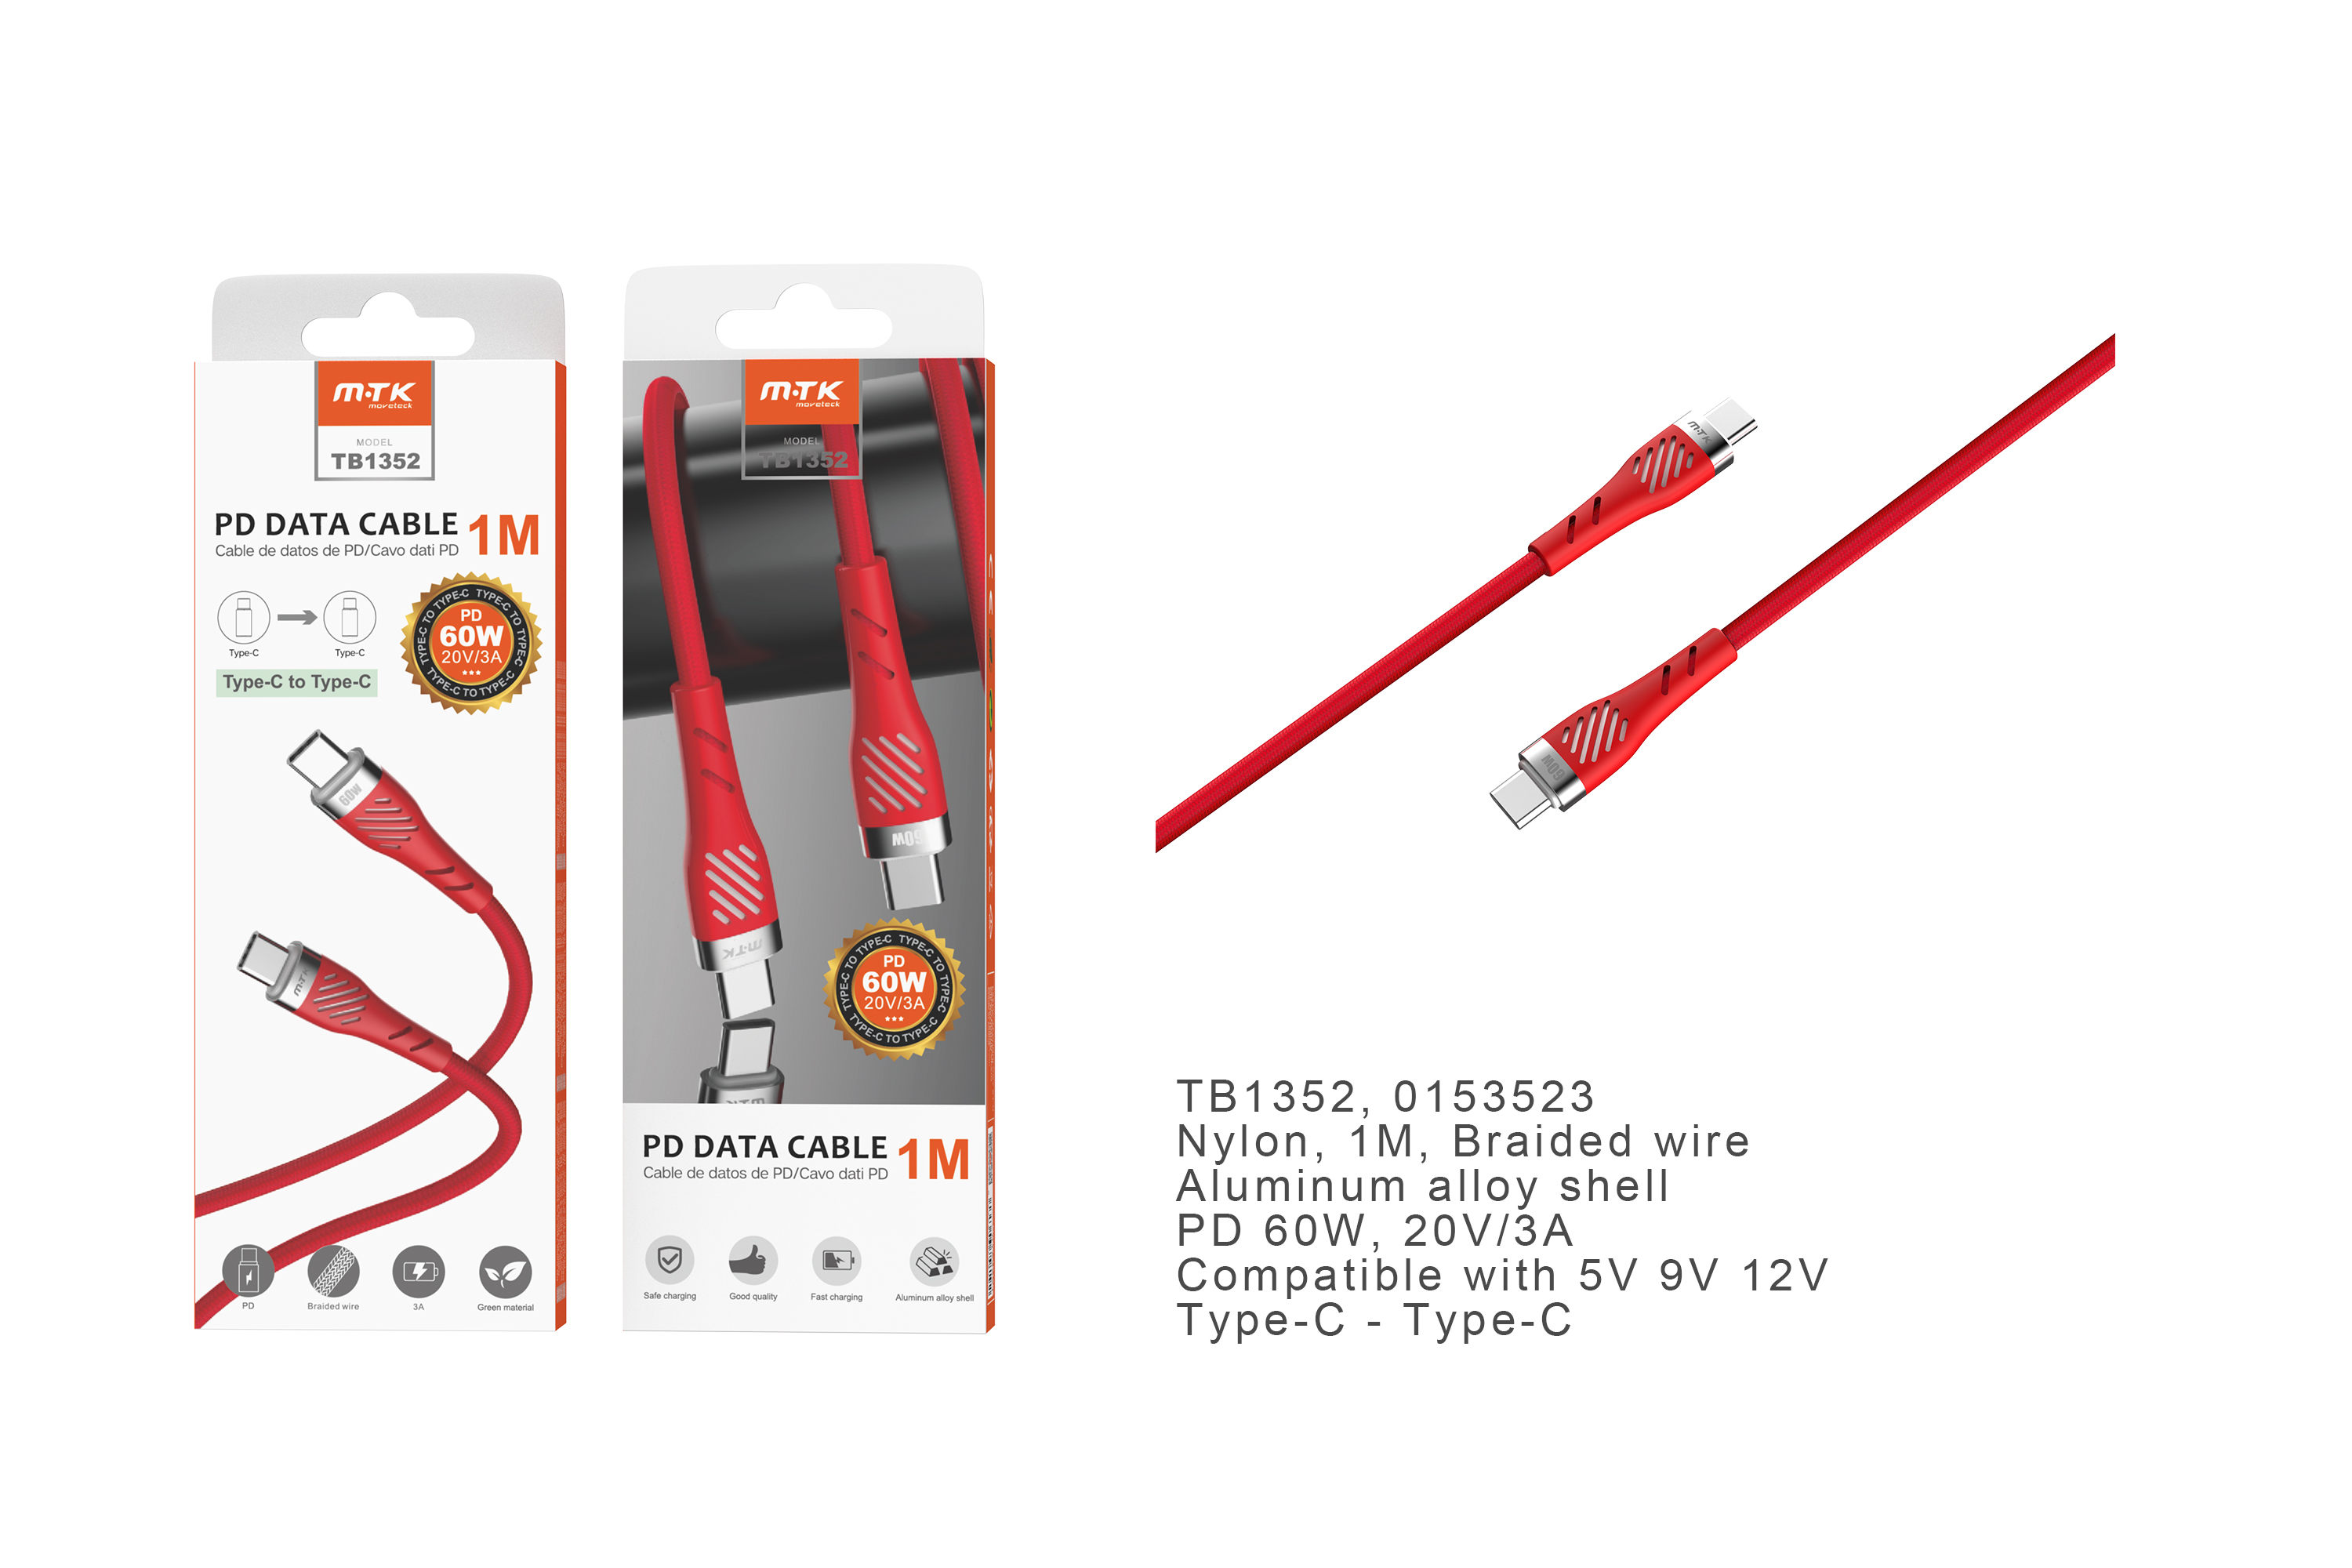 TB1352  RJ Cable de Datos Camyl nylon trenzado , Type-C a Type-C ,Carga Rapida PD 60W/20V/3A , Cable